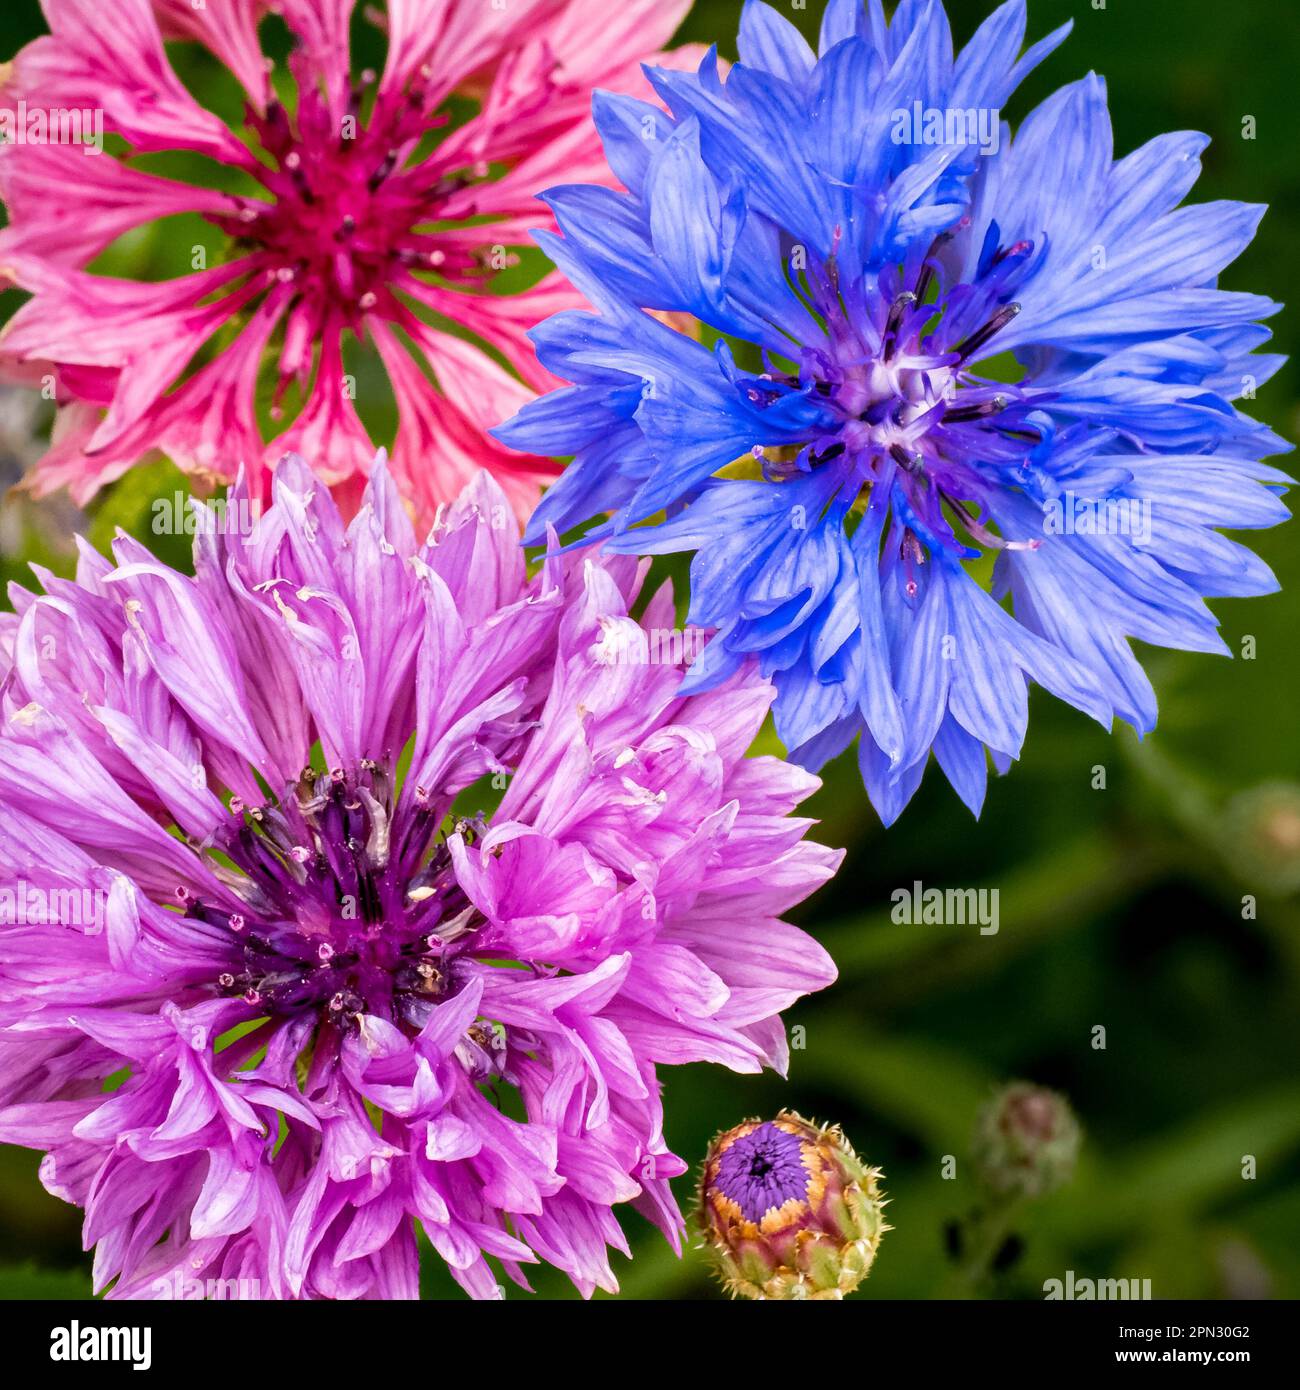 Trois fleurs de maïs de Centaurea Cyanus, chacune avec leurs teintes intenses de bleu, rose et violet font pour une exposition étonnante de natures beauté colorée. Banque D'Images